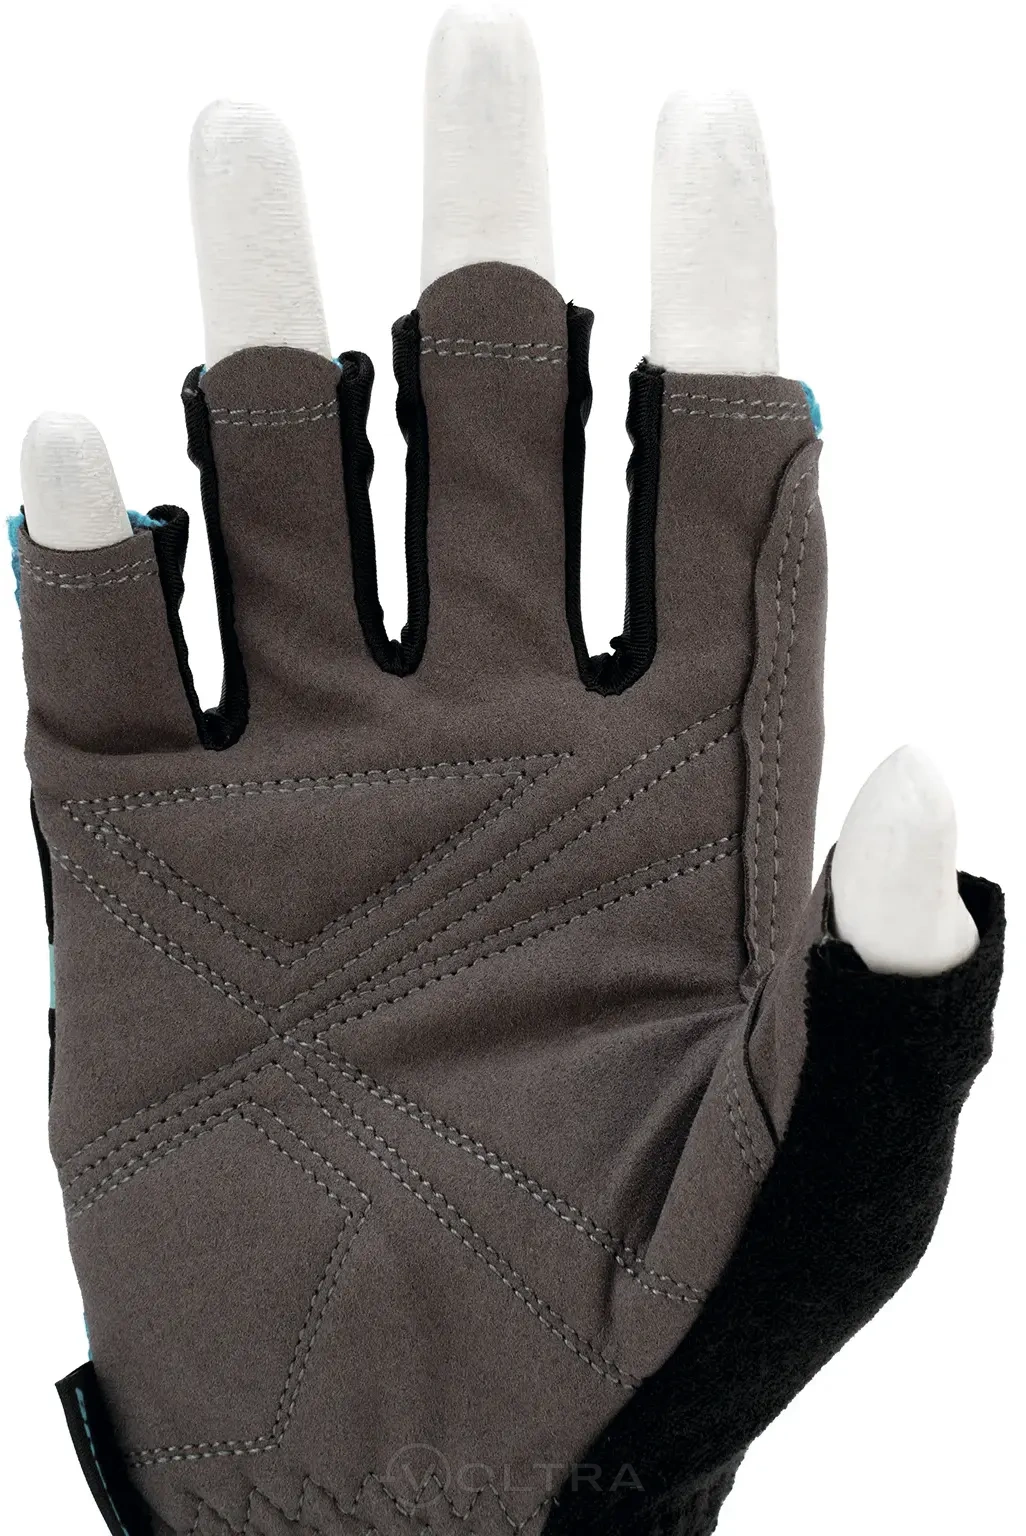 Перчатки комбинированные облегченные открытые пальцы AKTIV размер XL (10) Gross (90310)